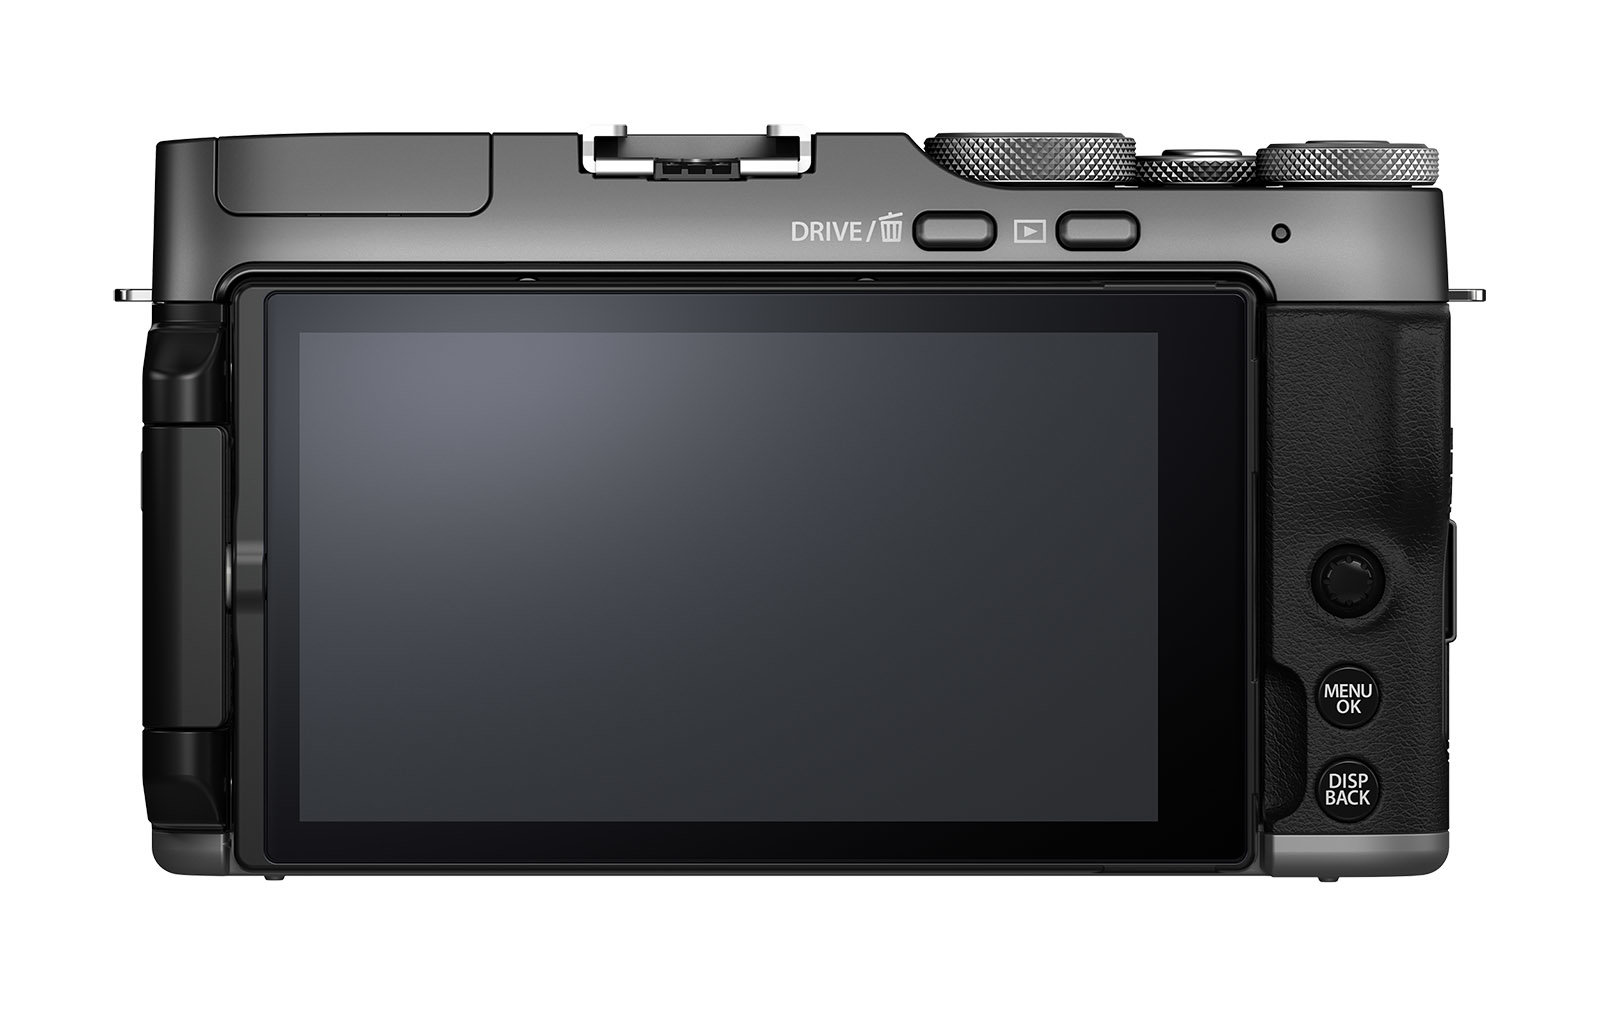 Giriş seviyesi Fujifilm X-A7 aynasız kamera duyuruldu